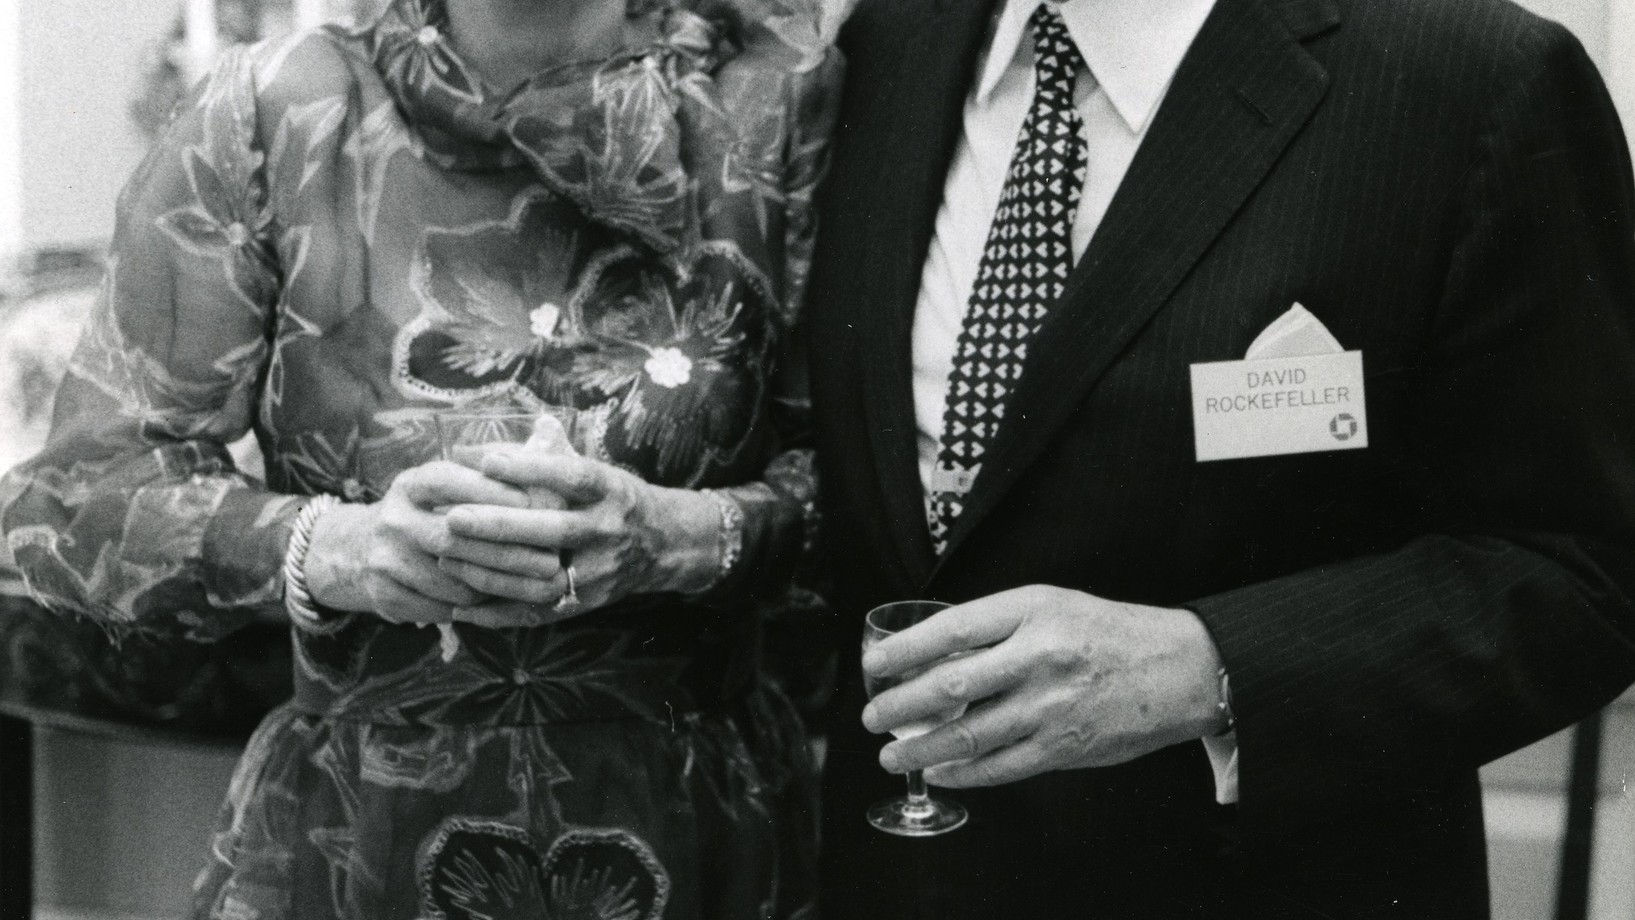 Peggy und David Rockefeller: Ein Leben für Kunst, Geschäft und Wohltätigkeit © Christie’s New York